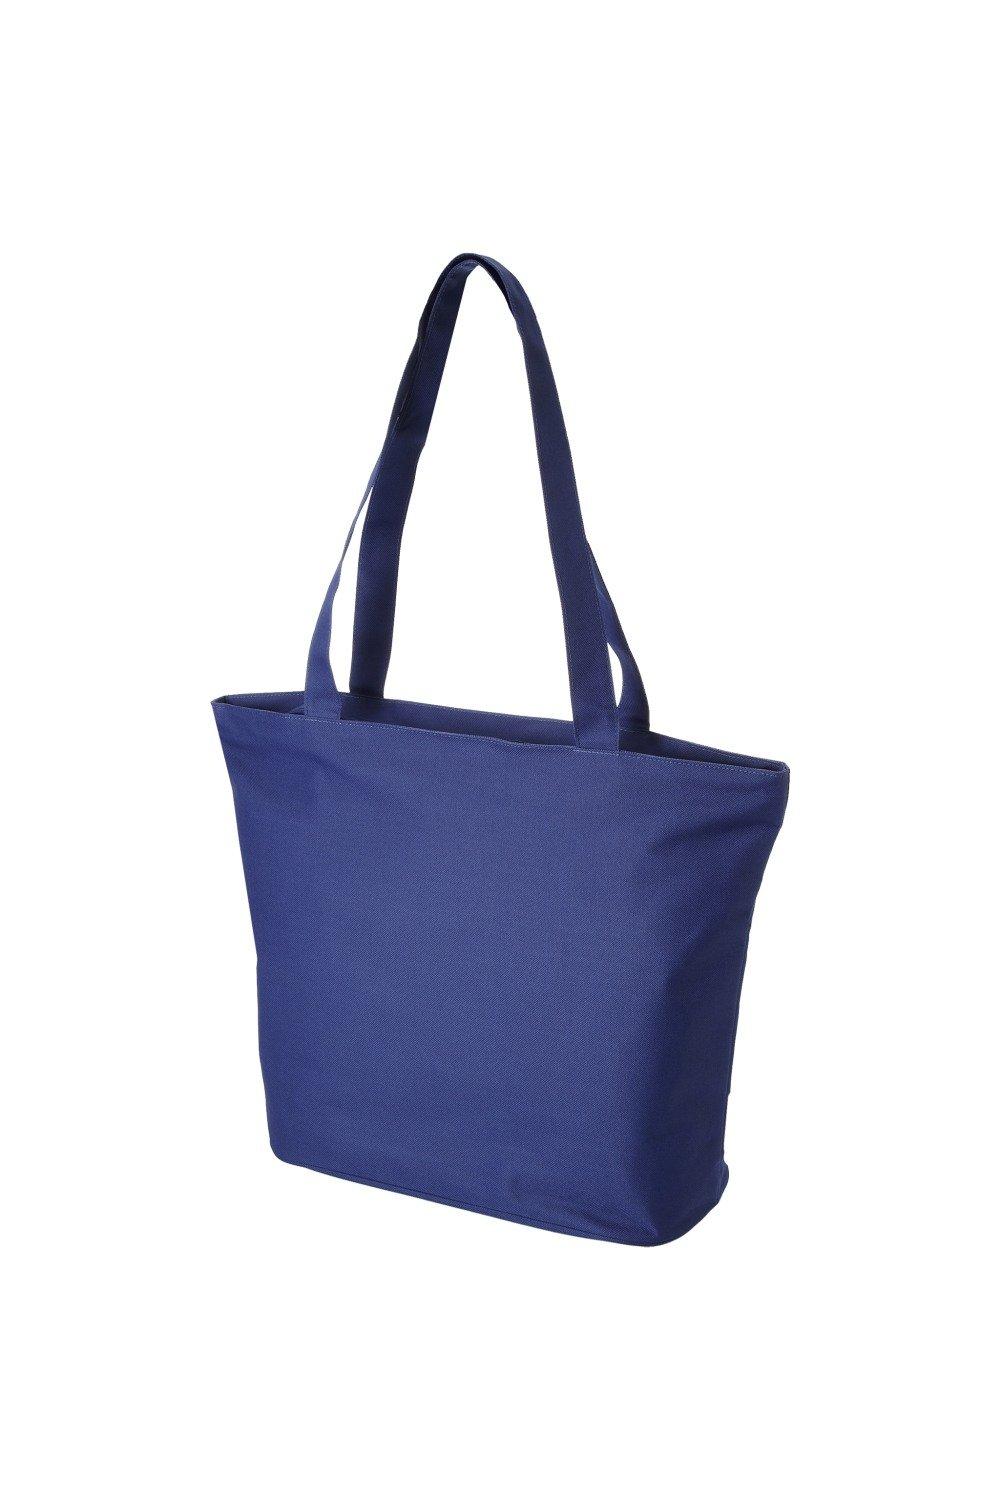 Пляжная сумка-тоут Panama (2 шт.) Bullet, синий цена и фото